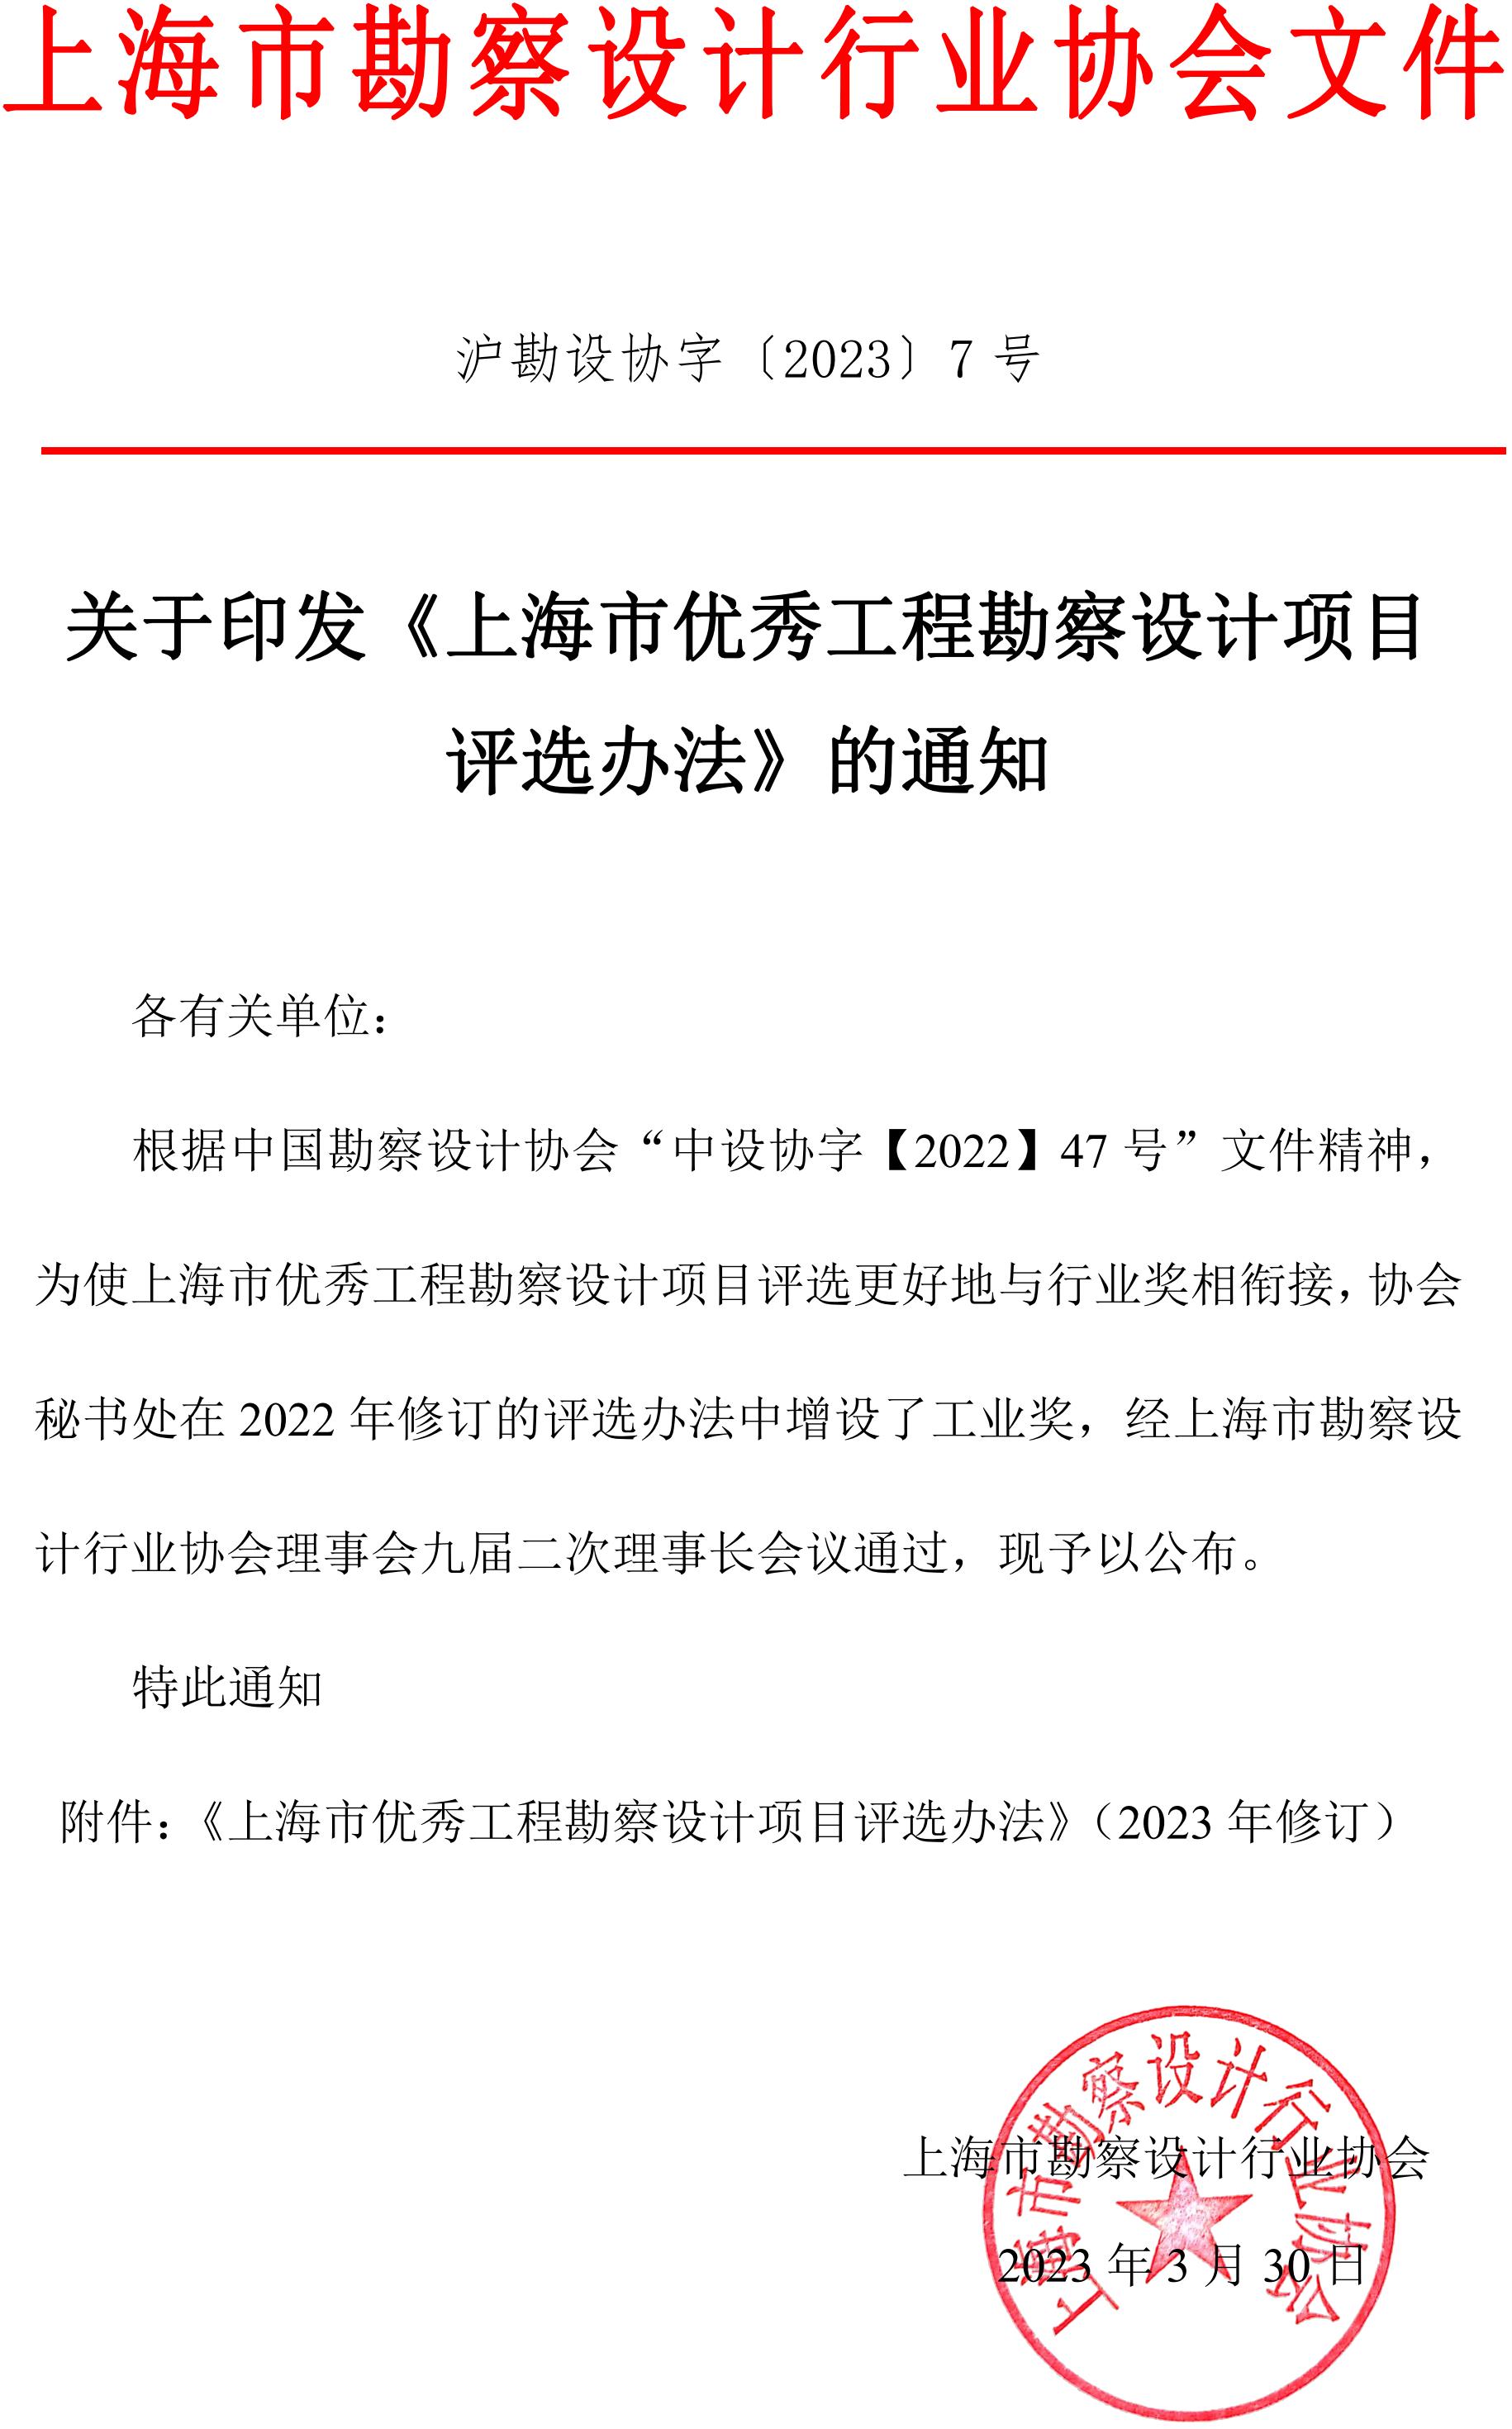 上海市优秀工程勘察设计项目评选办法的通知_00.jpg